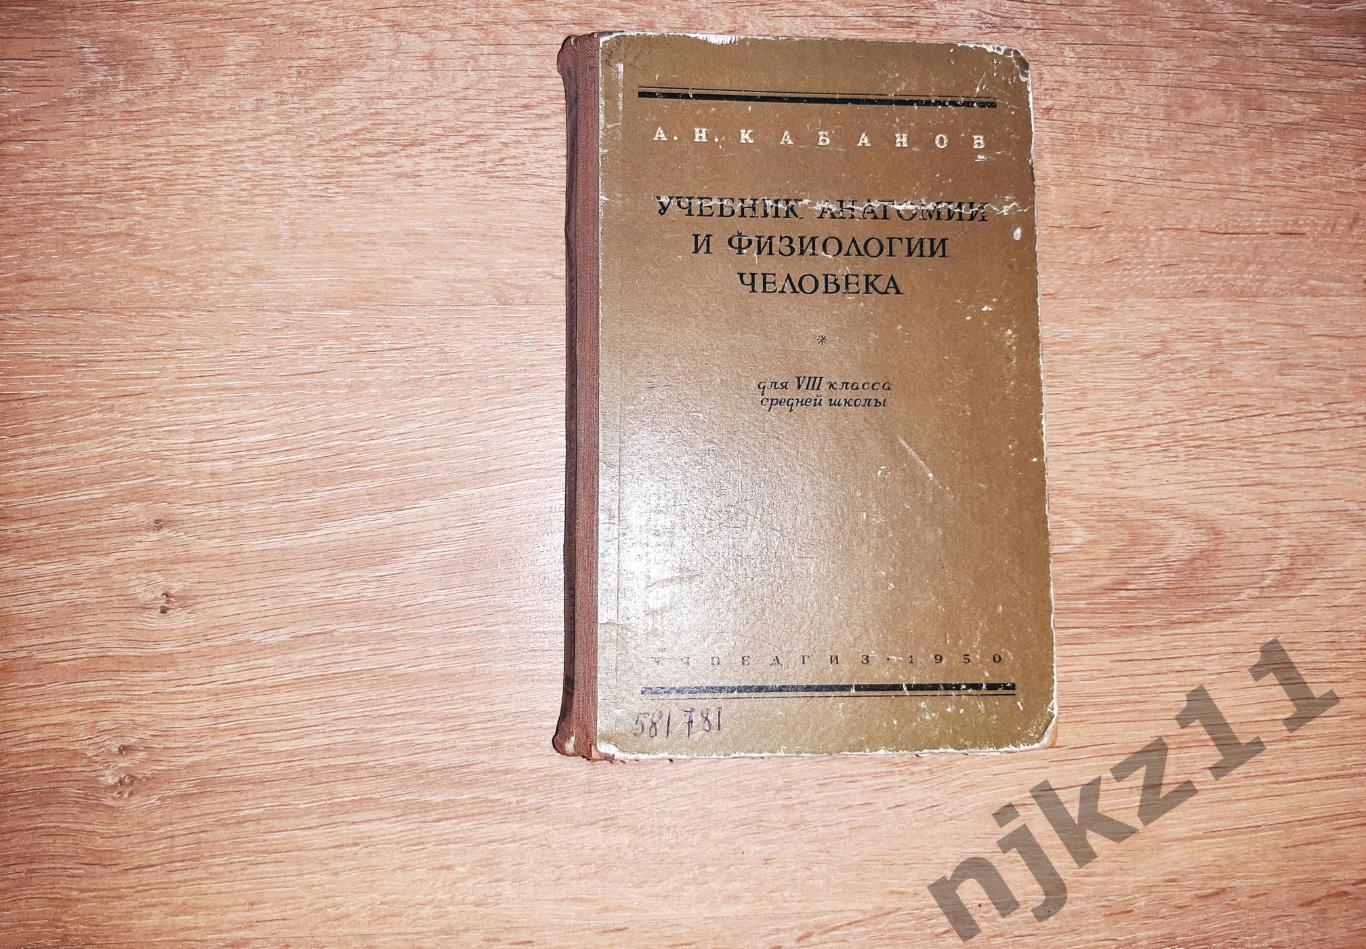 Кабанов, А.Н. Учебник анатомии и физиологии человека для 8 класса 1950г РЕДКОСТЬ